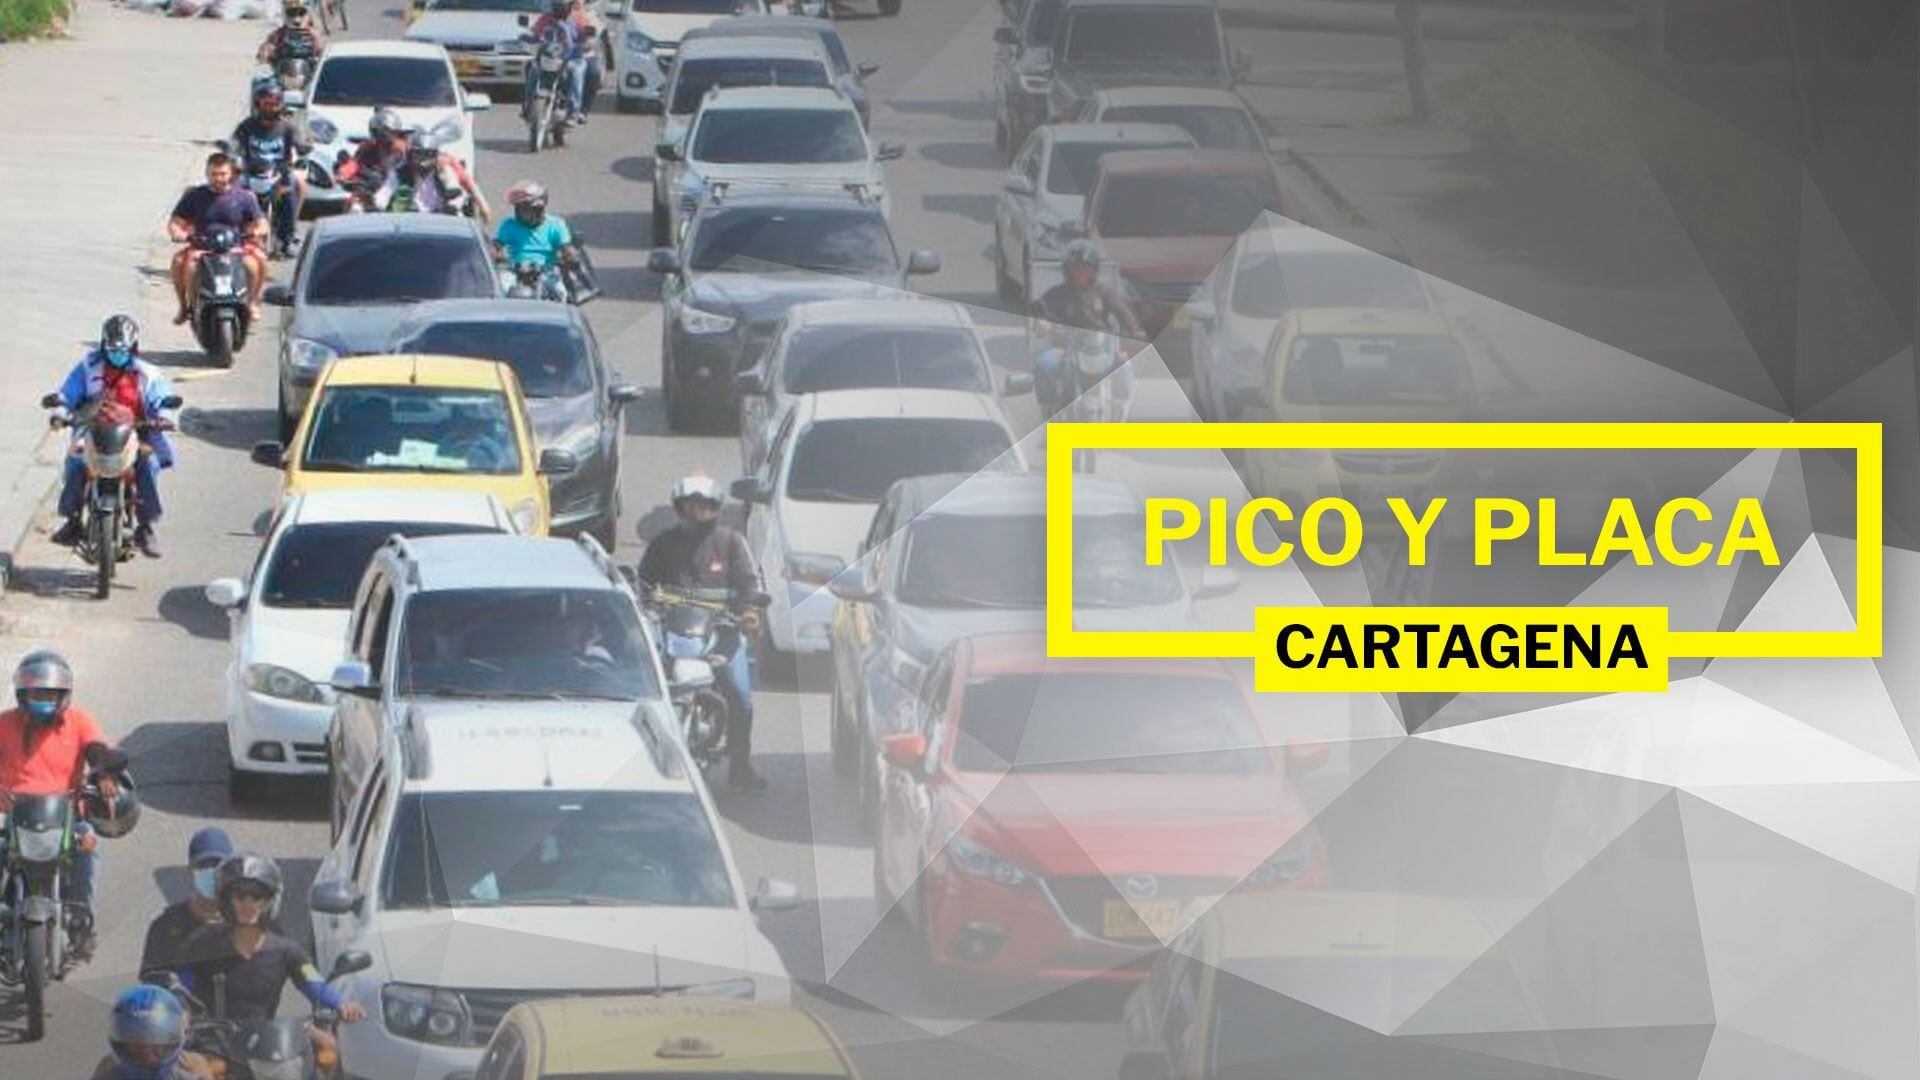 El Pico y Placa tiene como meta reducir la circulación de automóviles y bajar la contaminación de Bogotá (Infobae/Jovani Pérez)